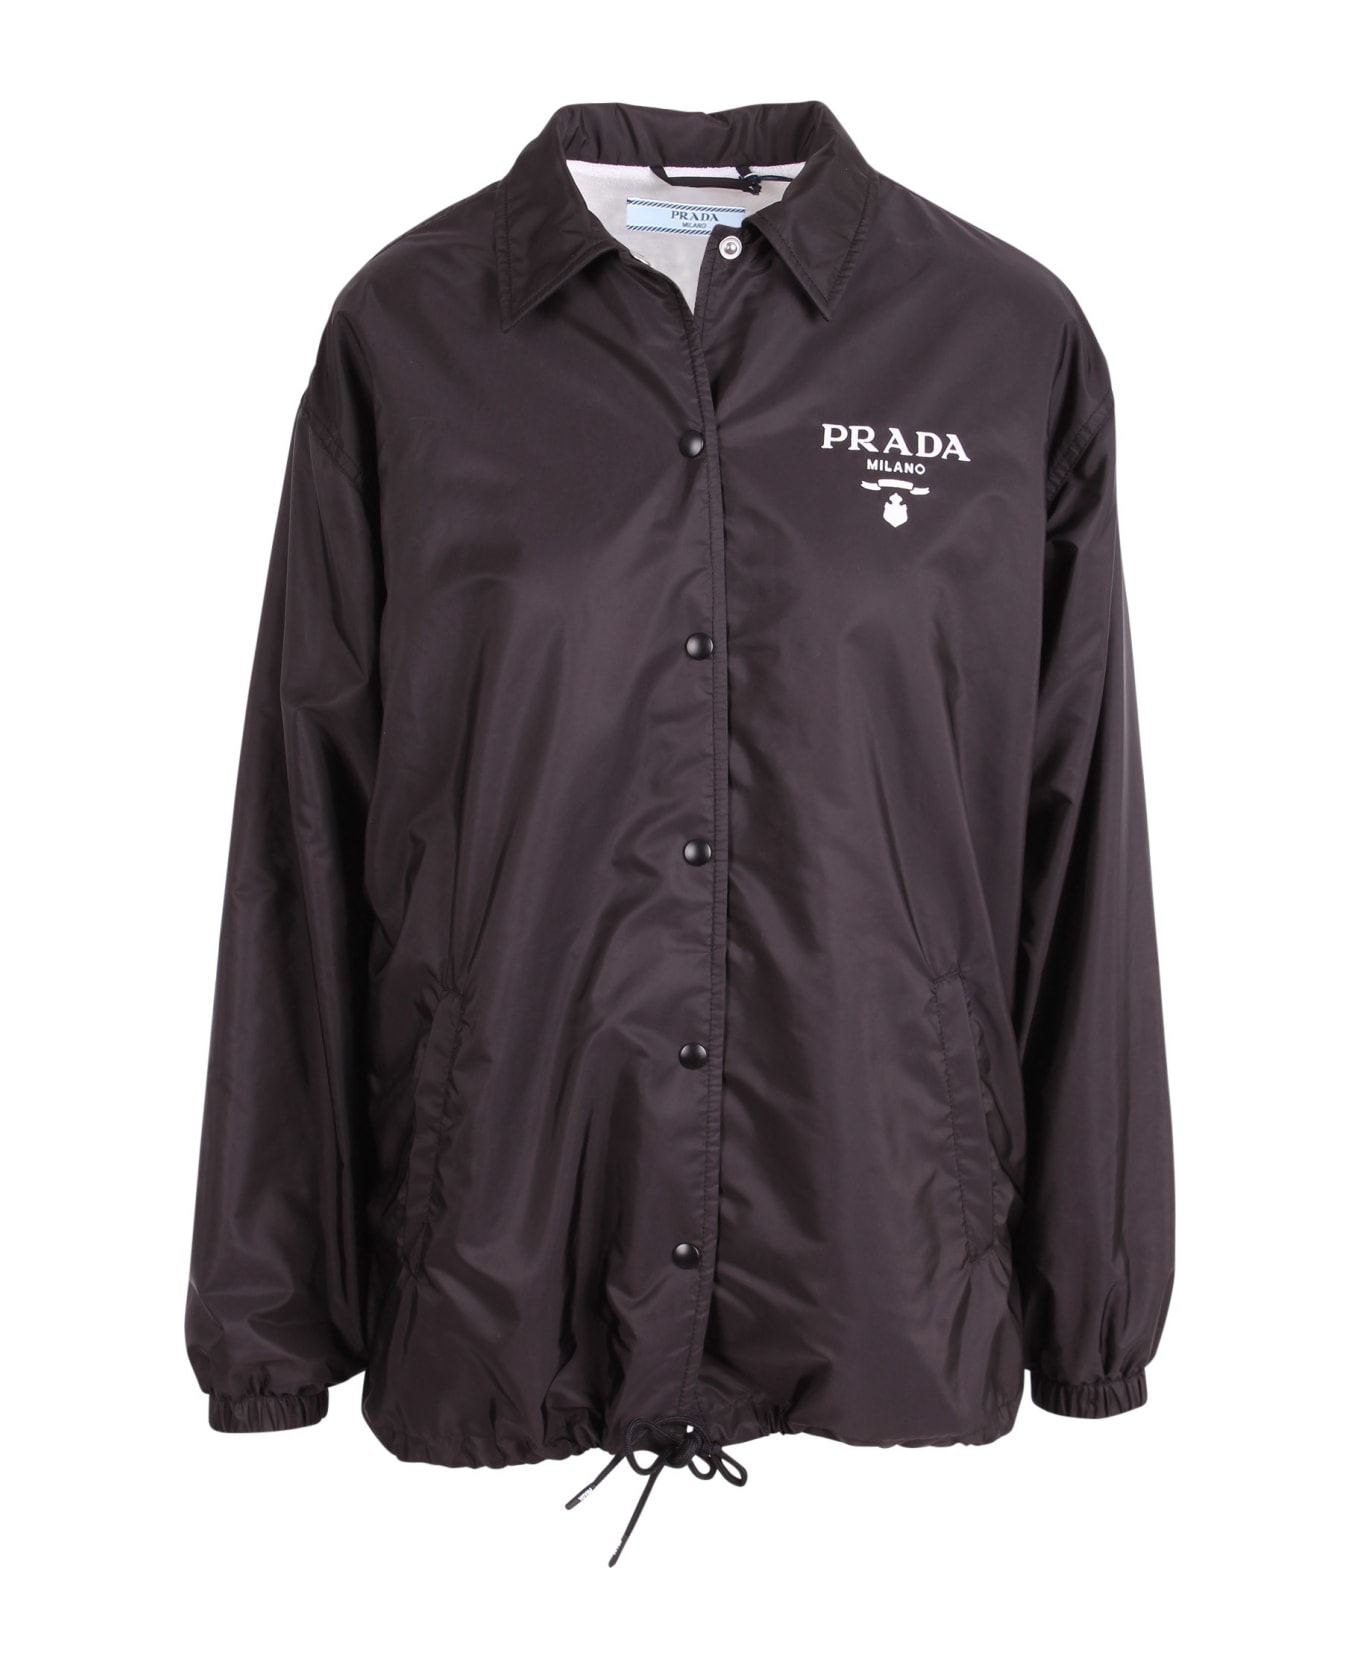 Prada 're-nylon' Logo Jacket - Black ジャケット